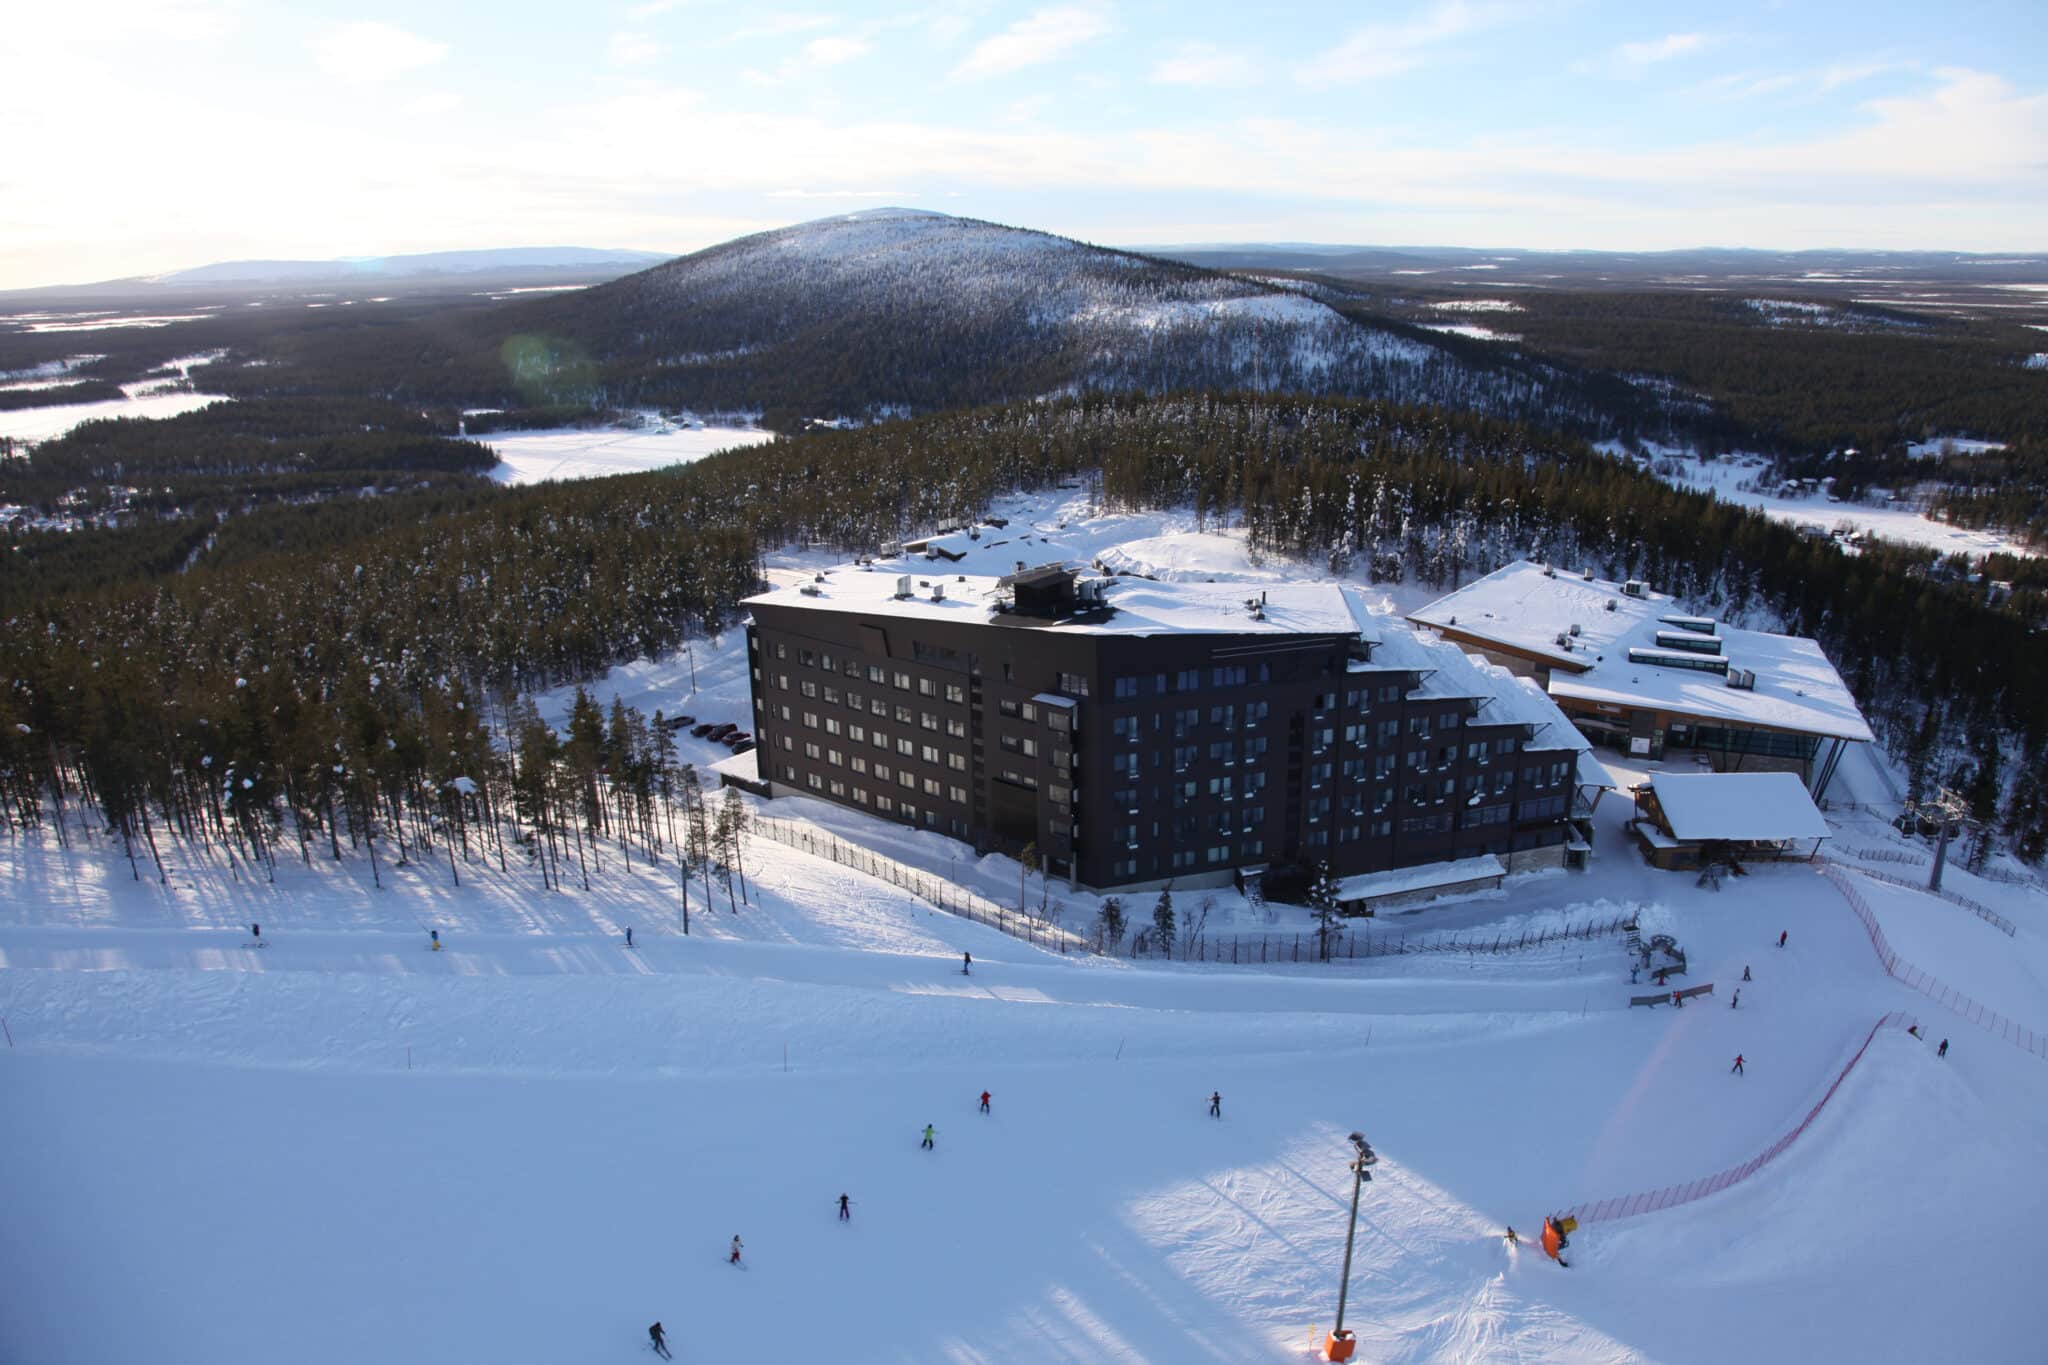 Сучасний готель Levi Panorama Hotel розташований в унікальному за своєю красою місці, на центральному схилі гори Леві, звідки відкриваються дивовижні панорамні краєвиди на лапландську зимову природу.